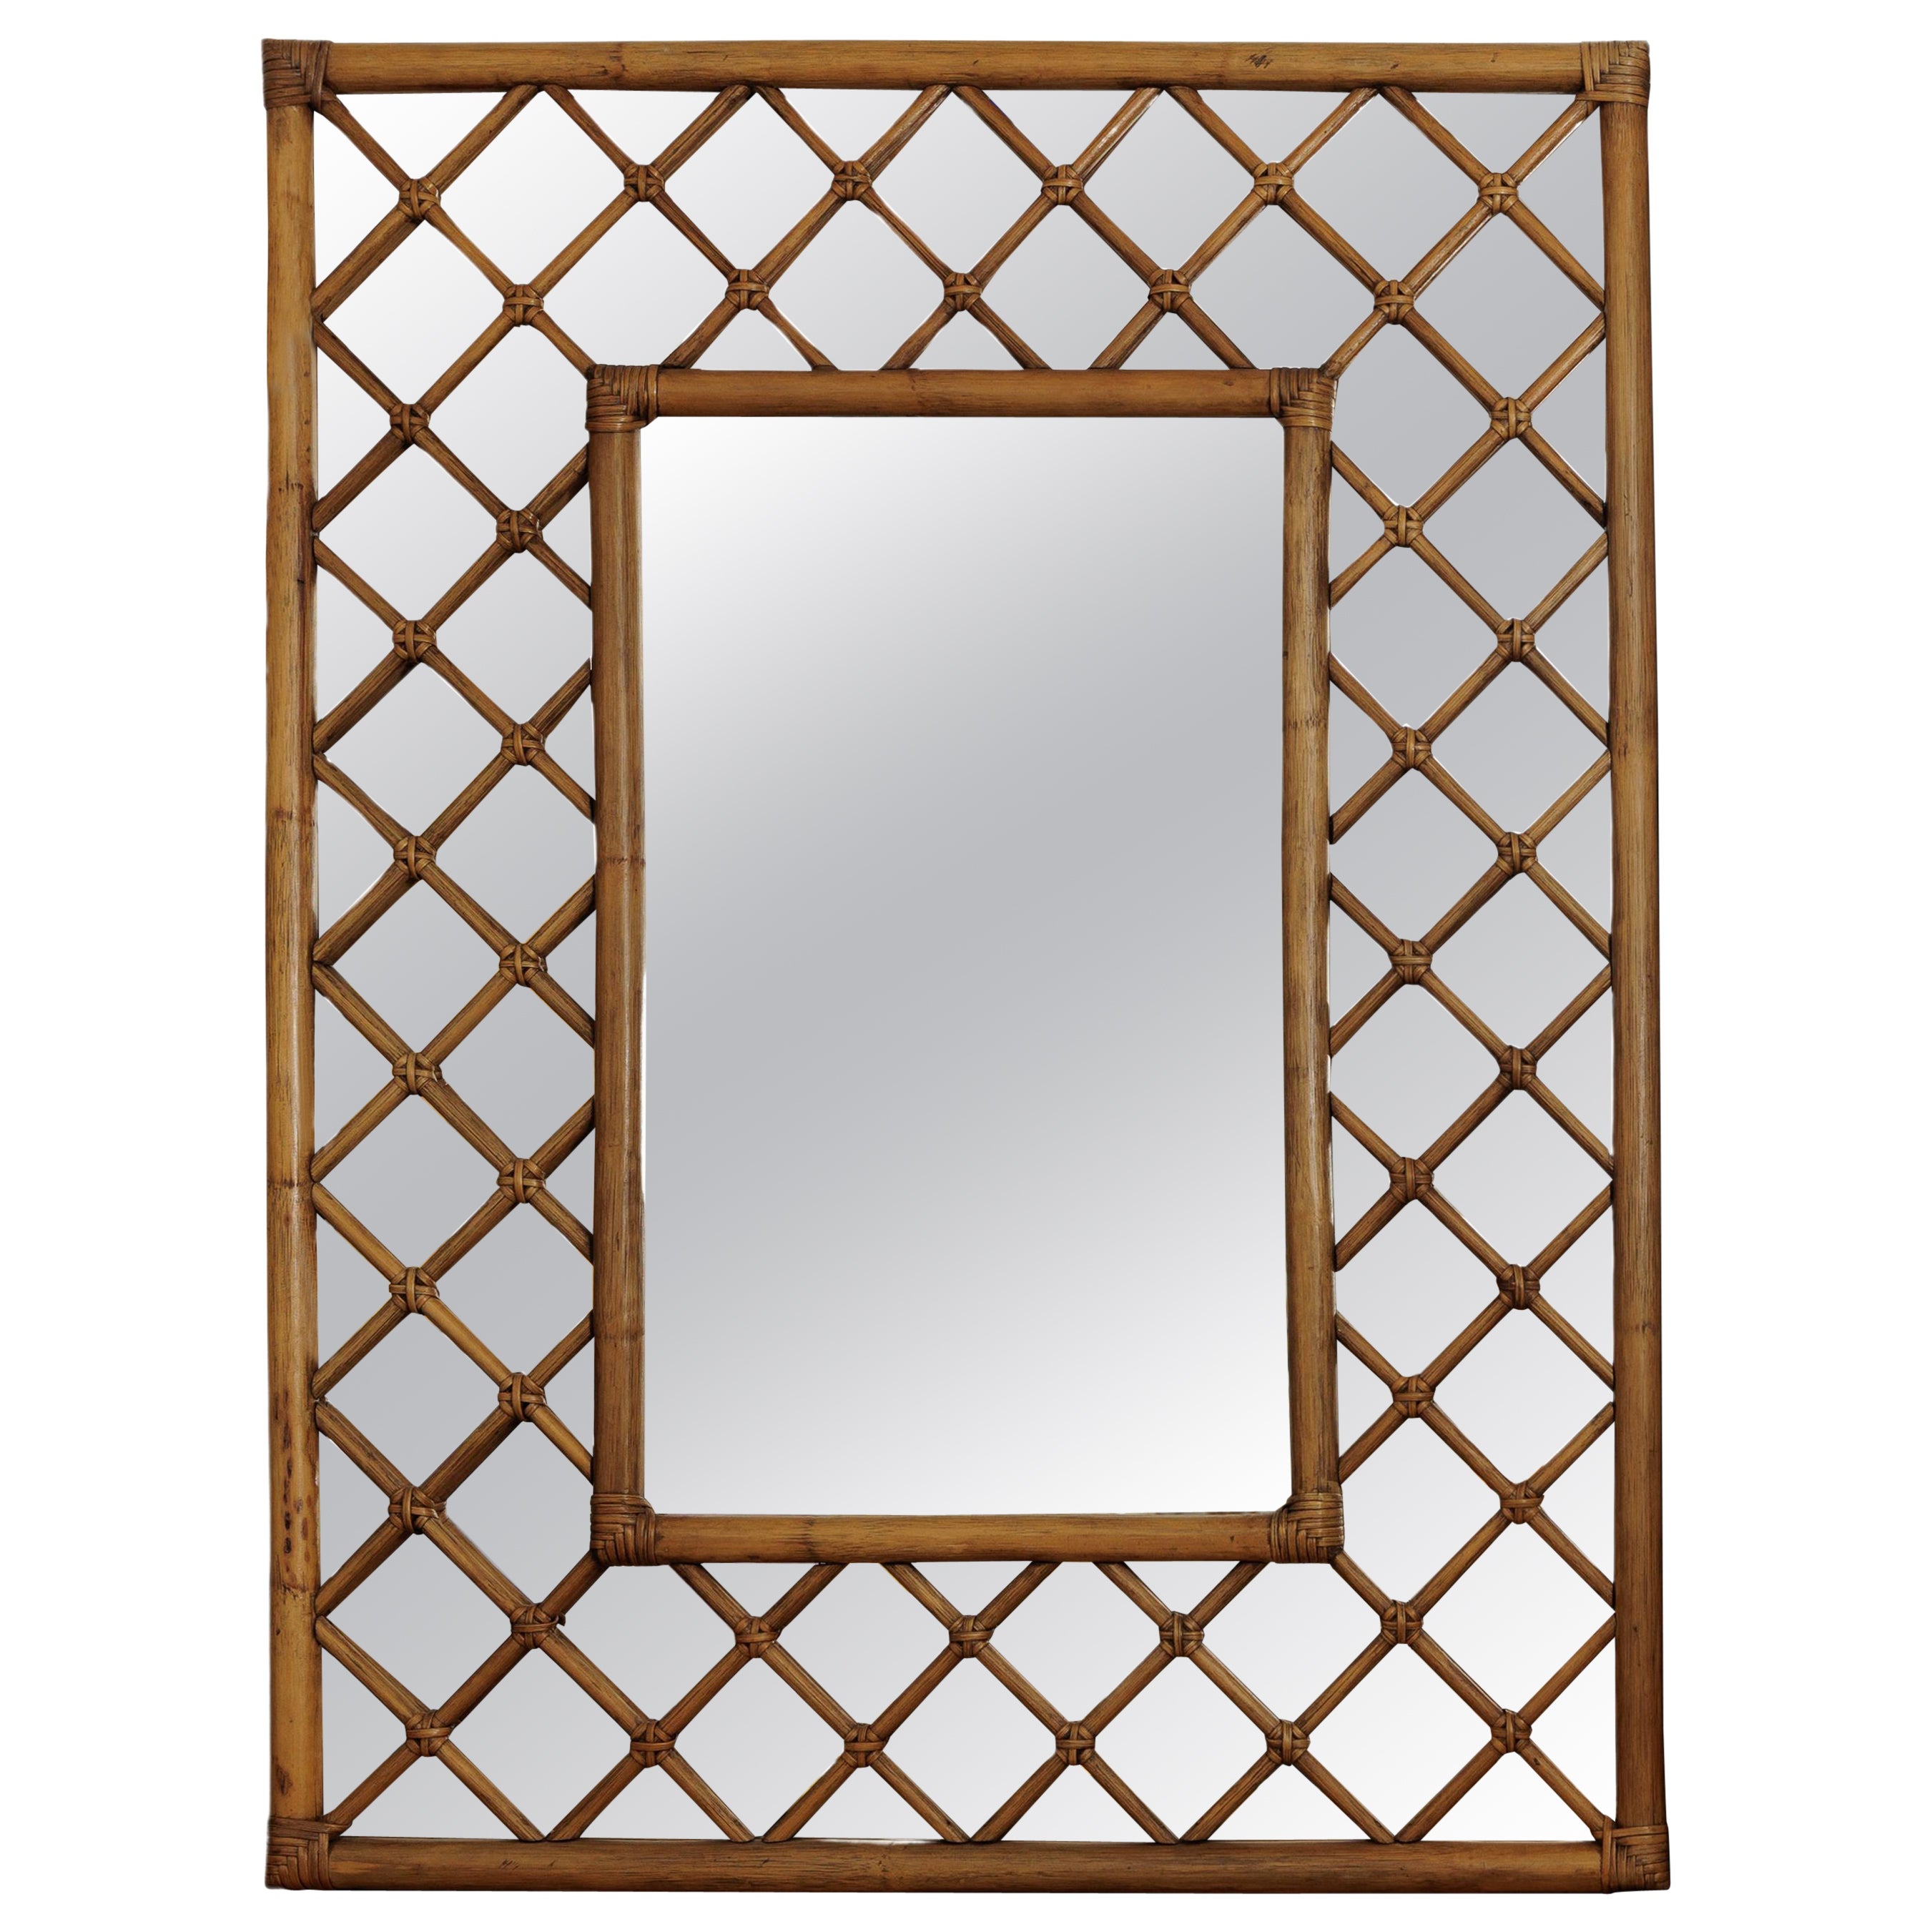 Bamboo Woven Lattice Mirror For Sale